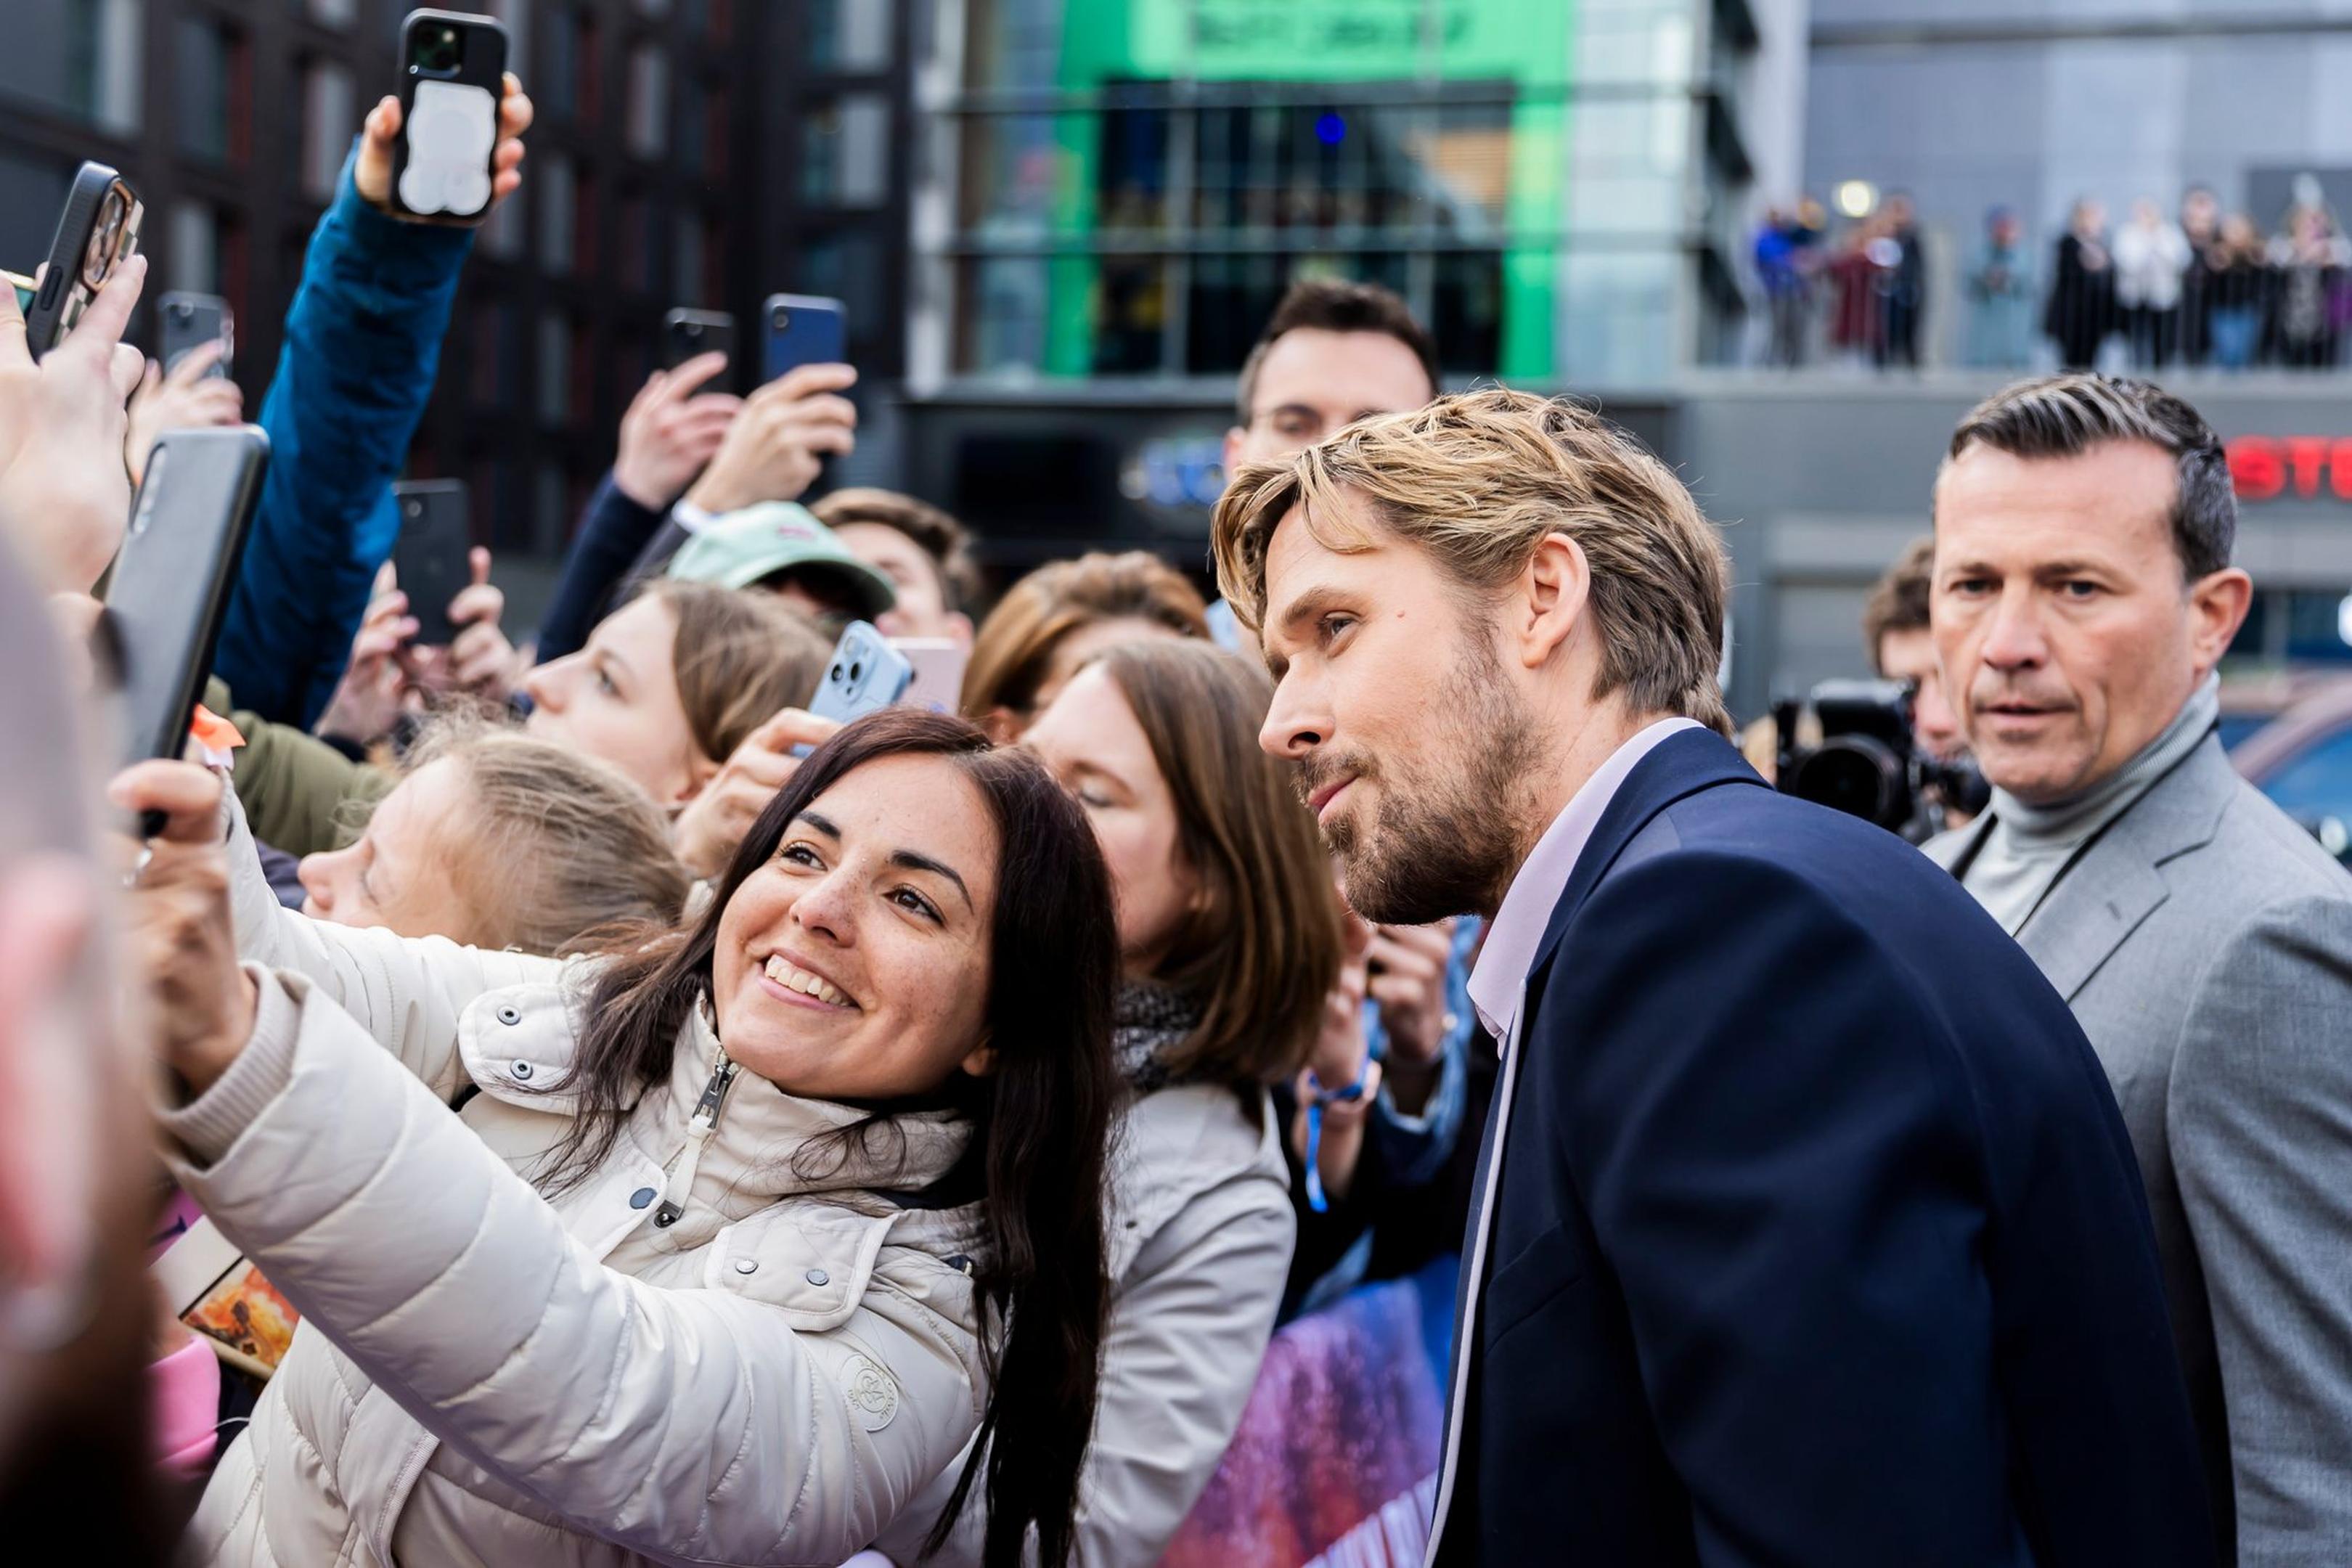 Und auch Ryan Gosling posiert für Selfies mit wartenden Fans.